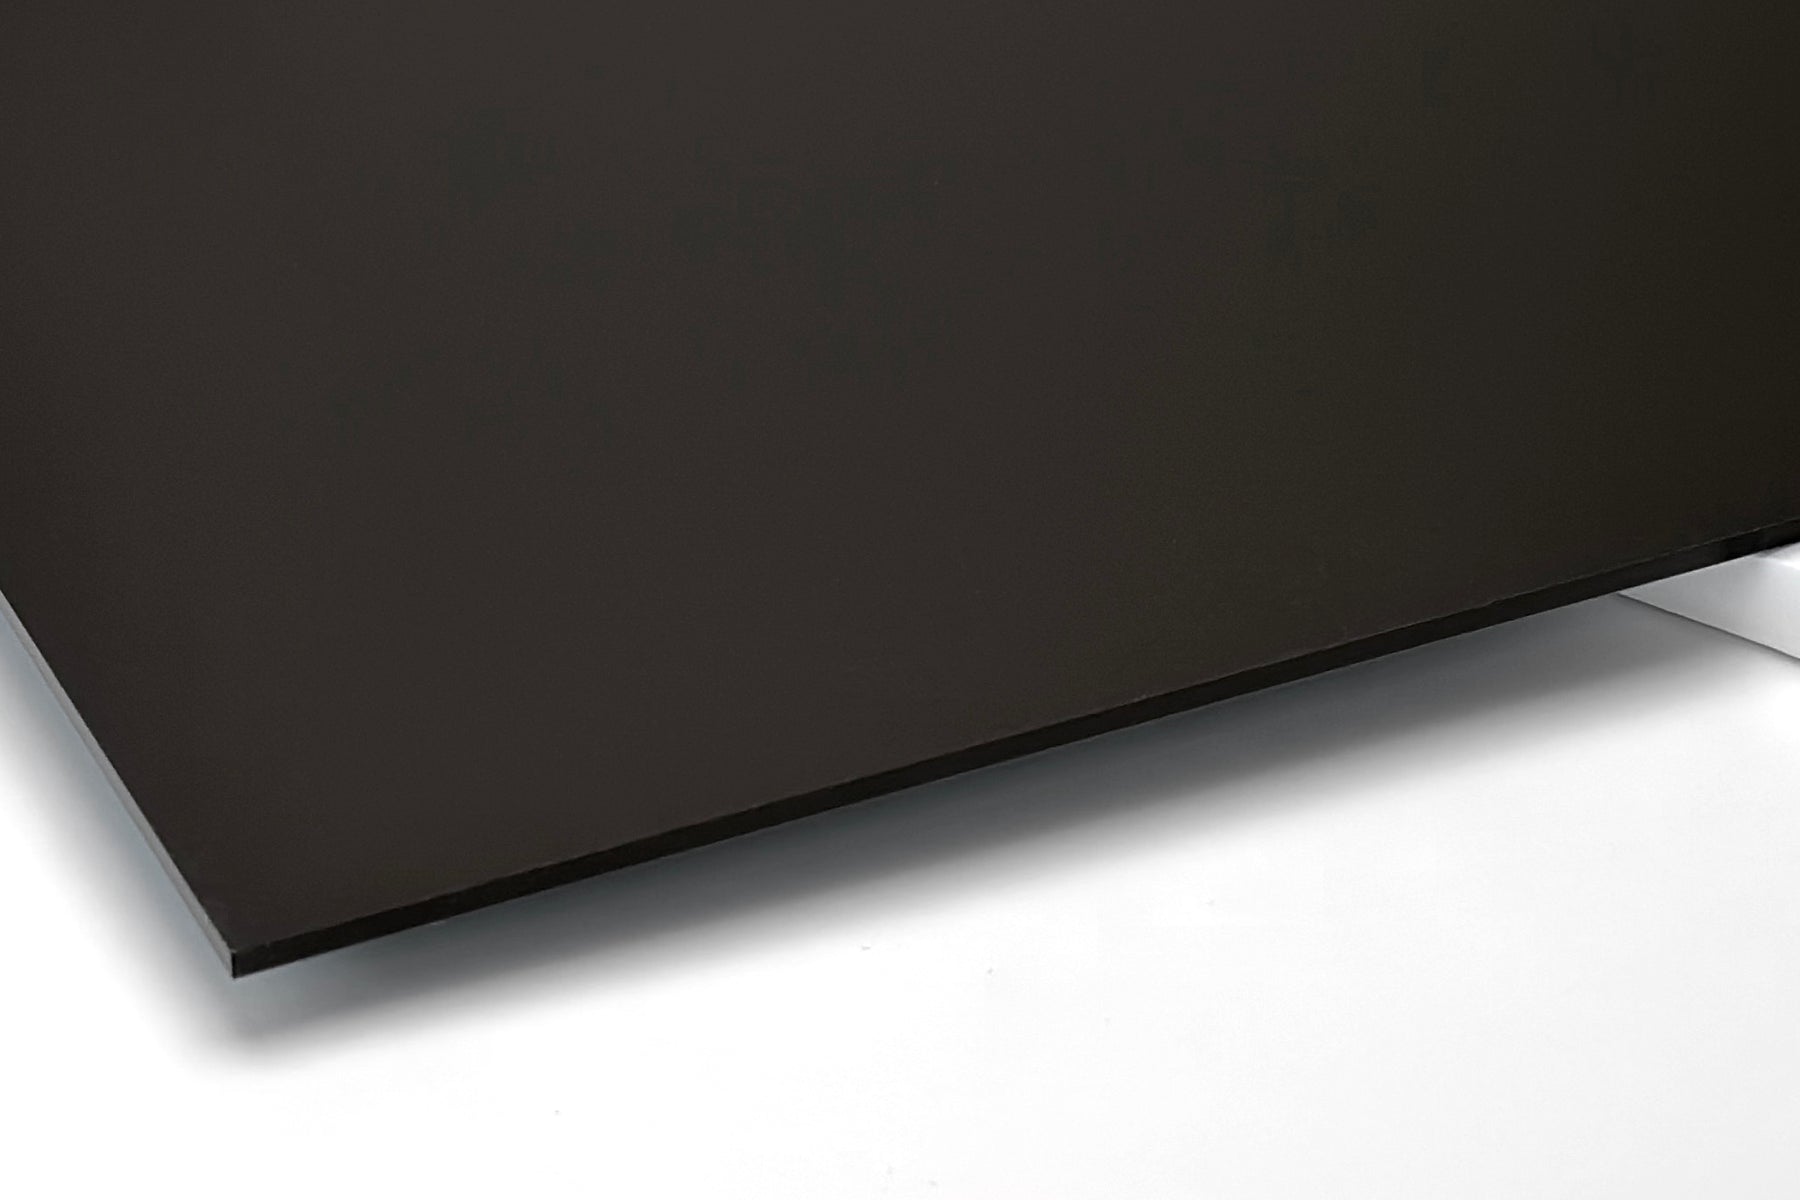 Matta-akryyli, musta, laserleikkuu ja painatus - 600x400mm